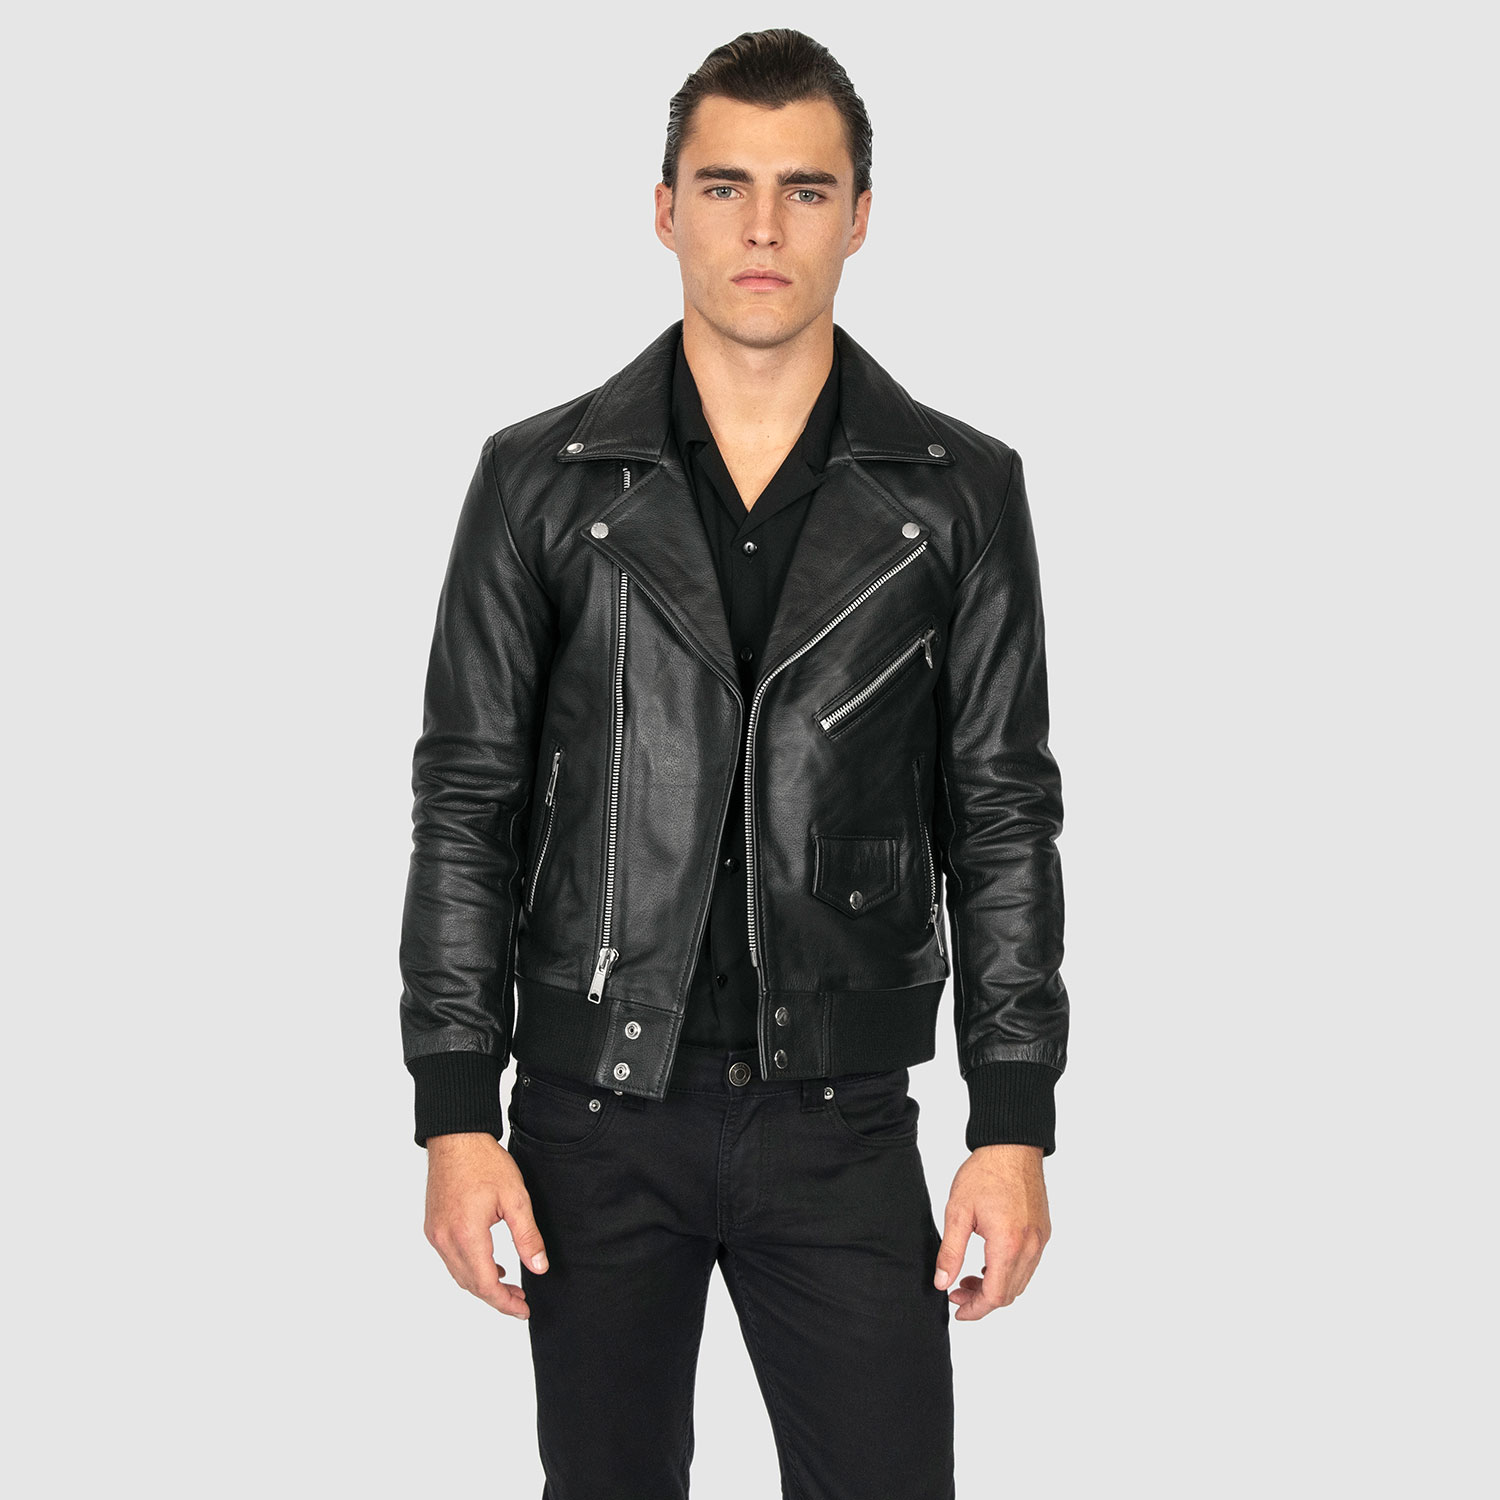 Leather Jacket, Classic Style Leather Jacket